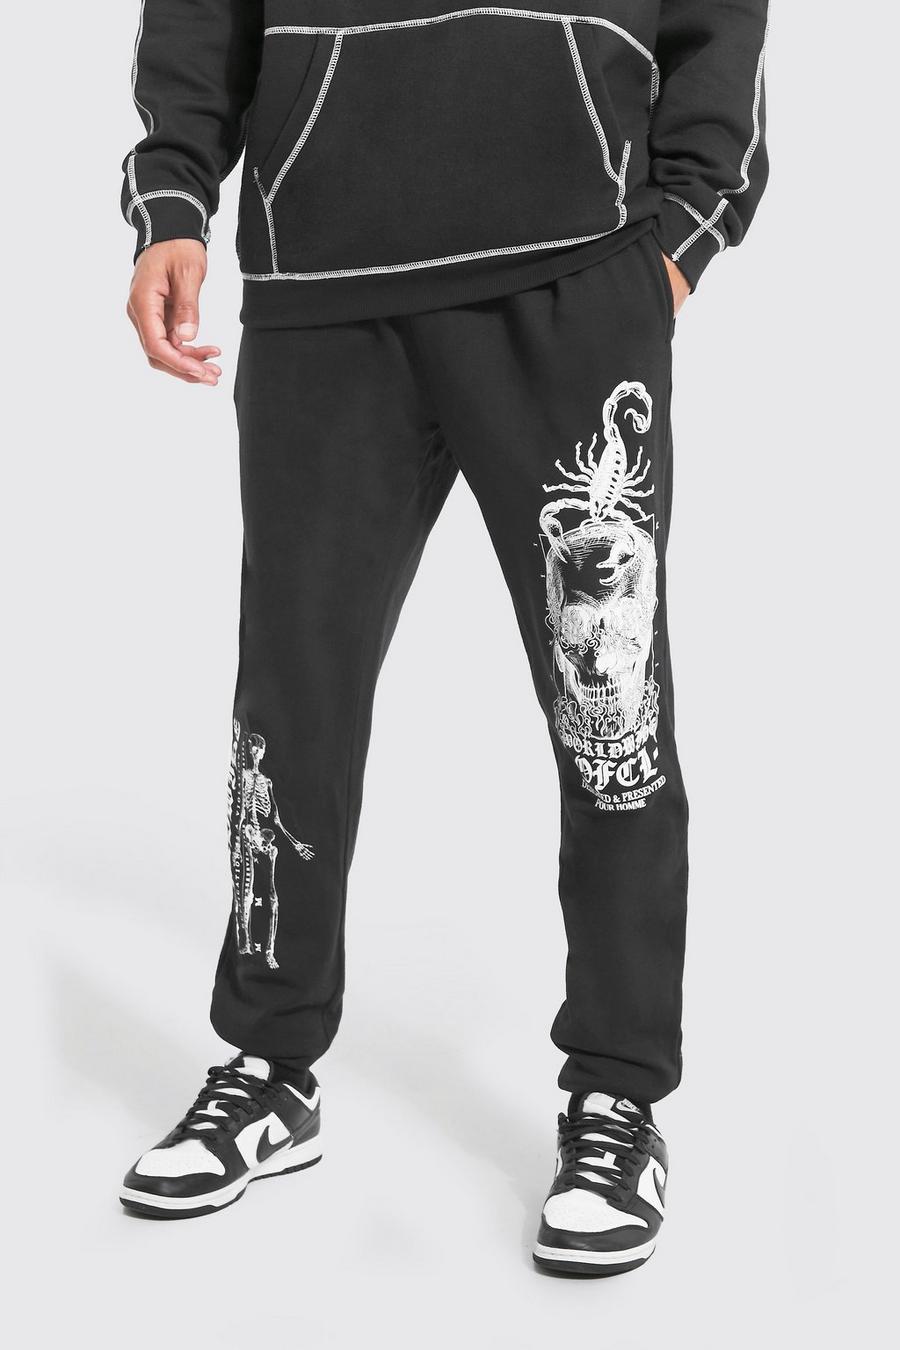 Pantaloni tuta Tall Worldwide Ofcl con grafica di scheletro, Black negro